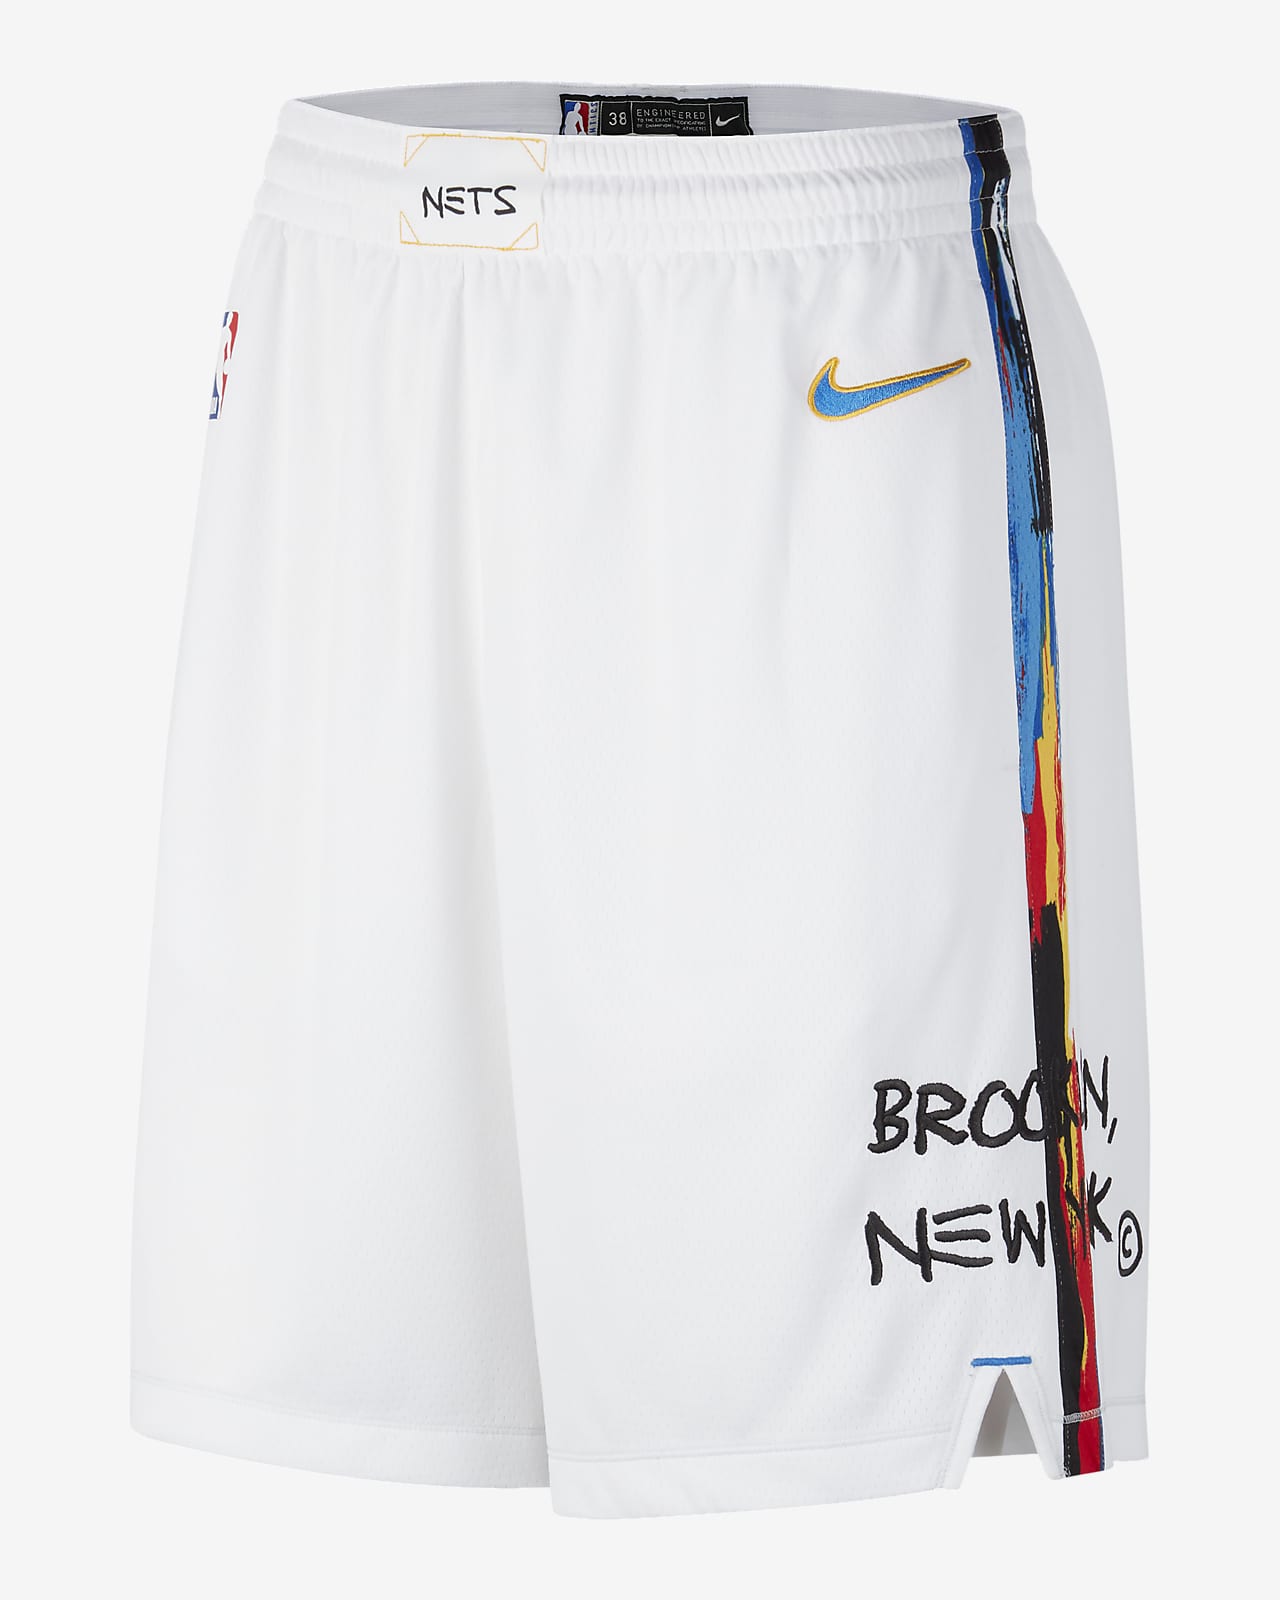 new brooklyn nets jersey 2023